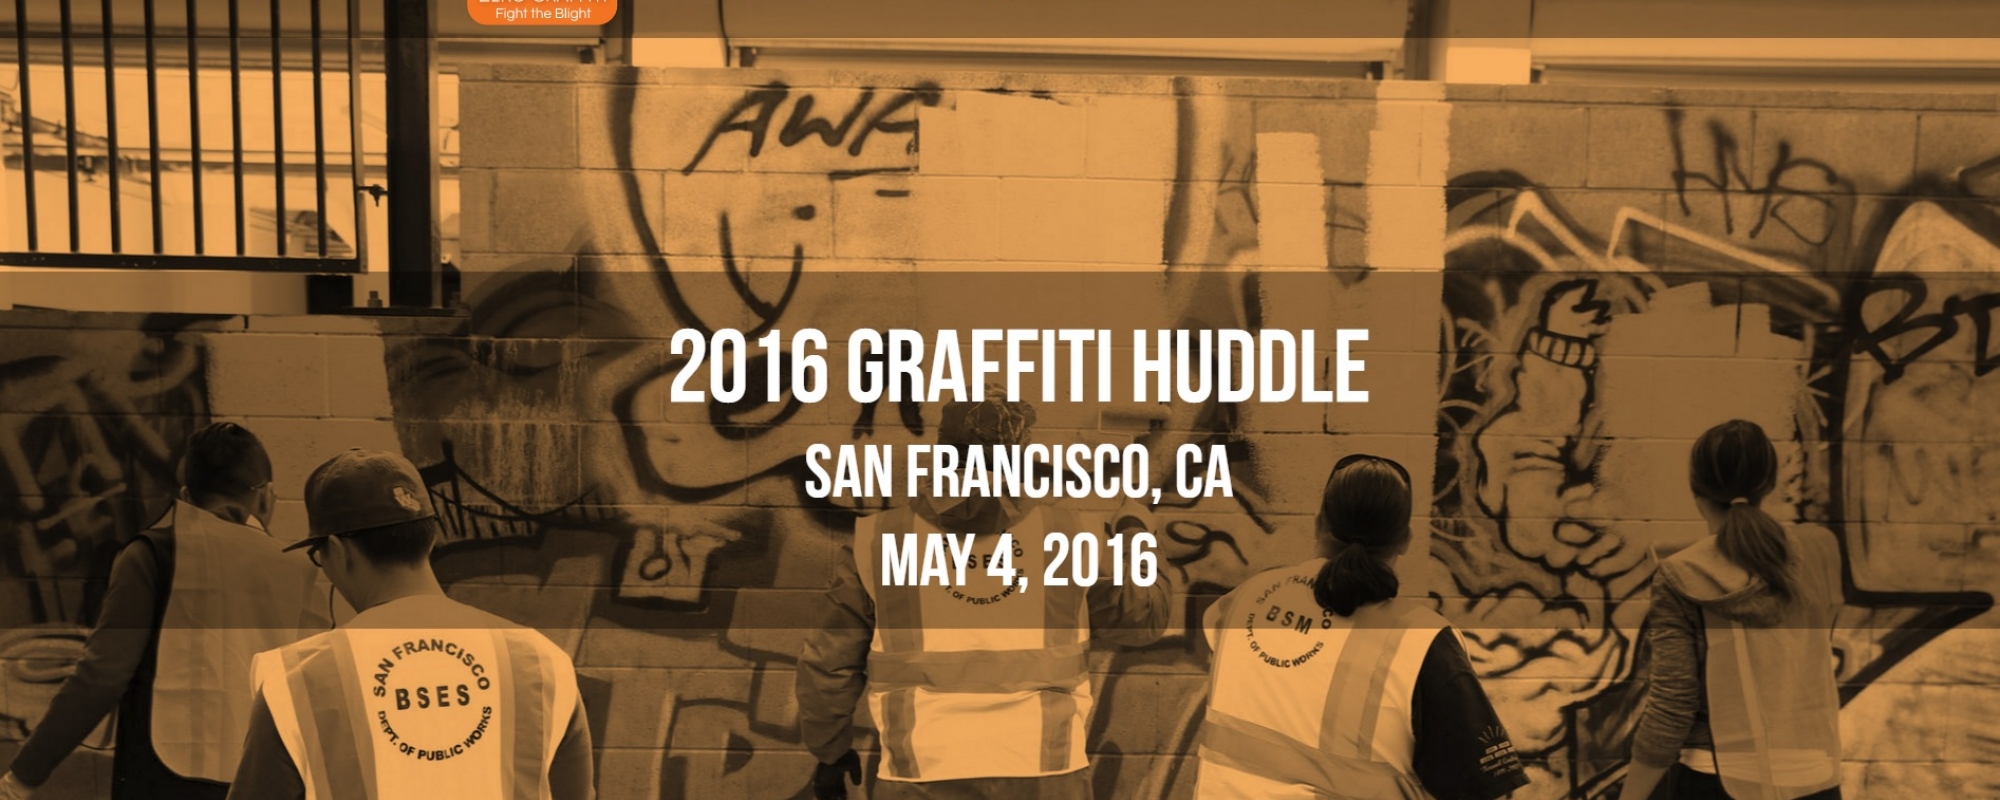 Graffiti Huddle home page image